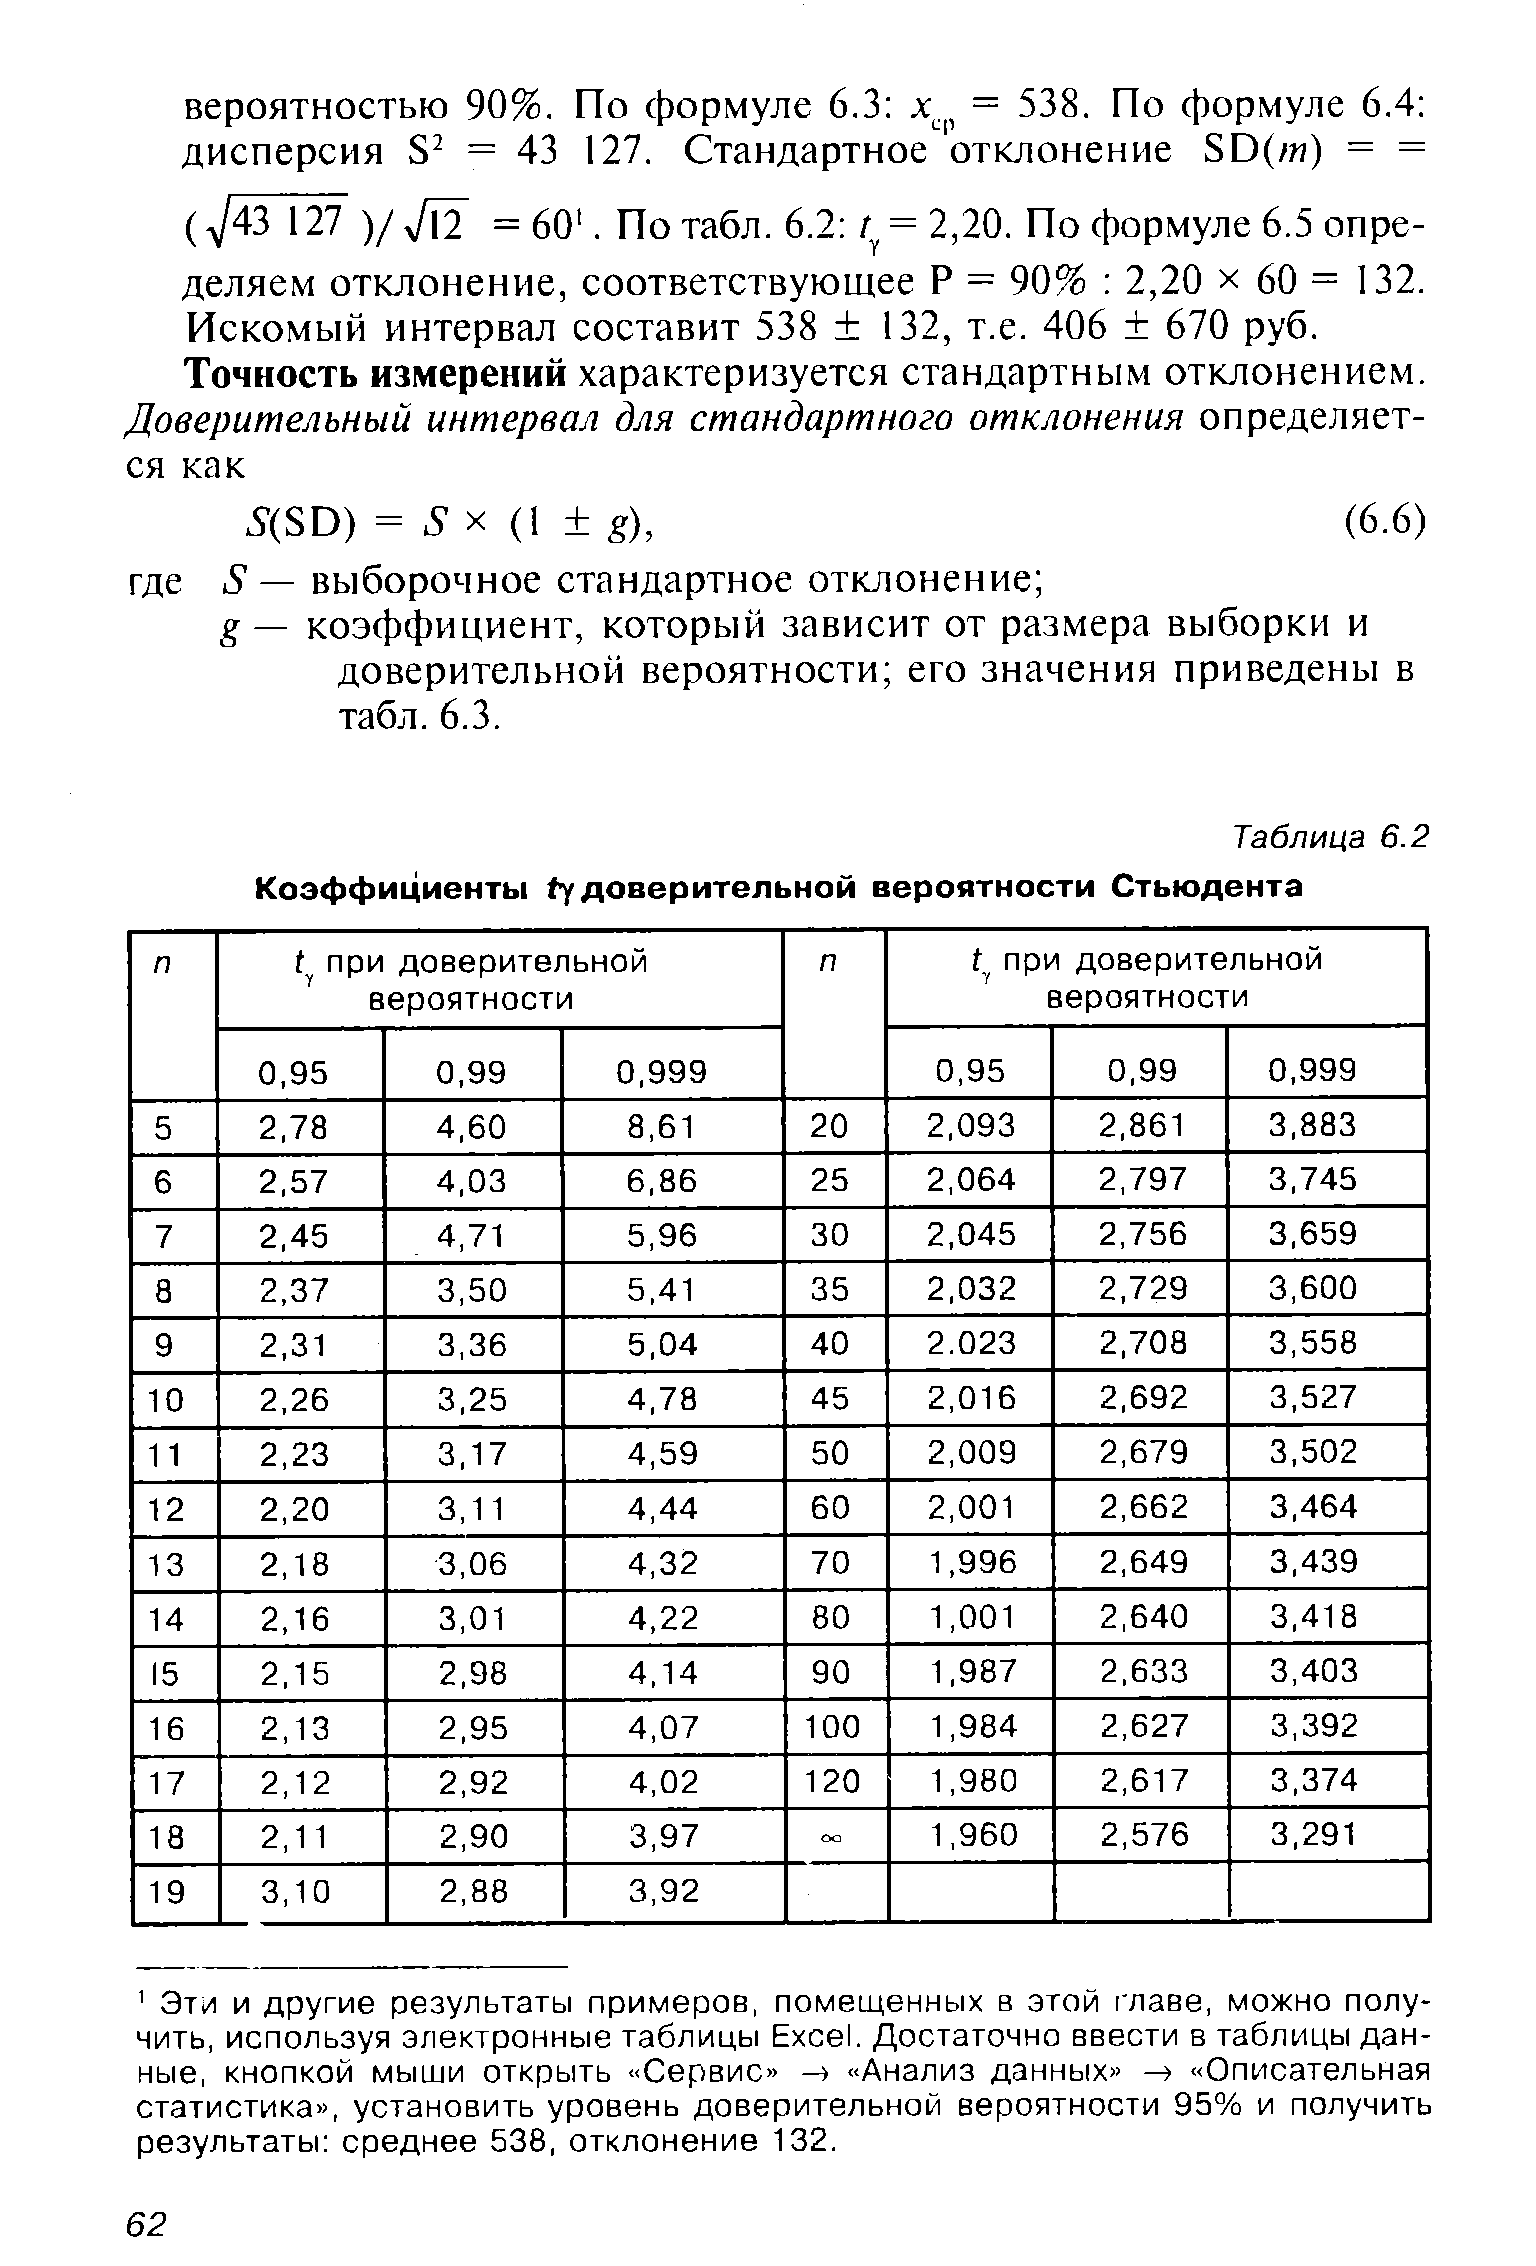 Таблица 6.2 Коэффициенты fy доверительной вероятности Стьюдента
